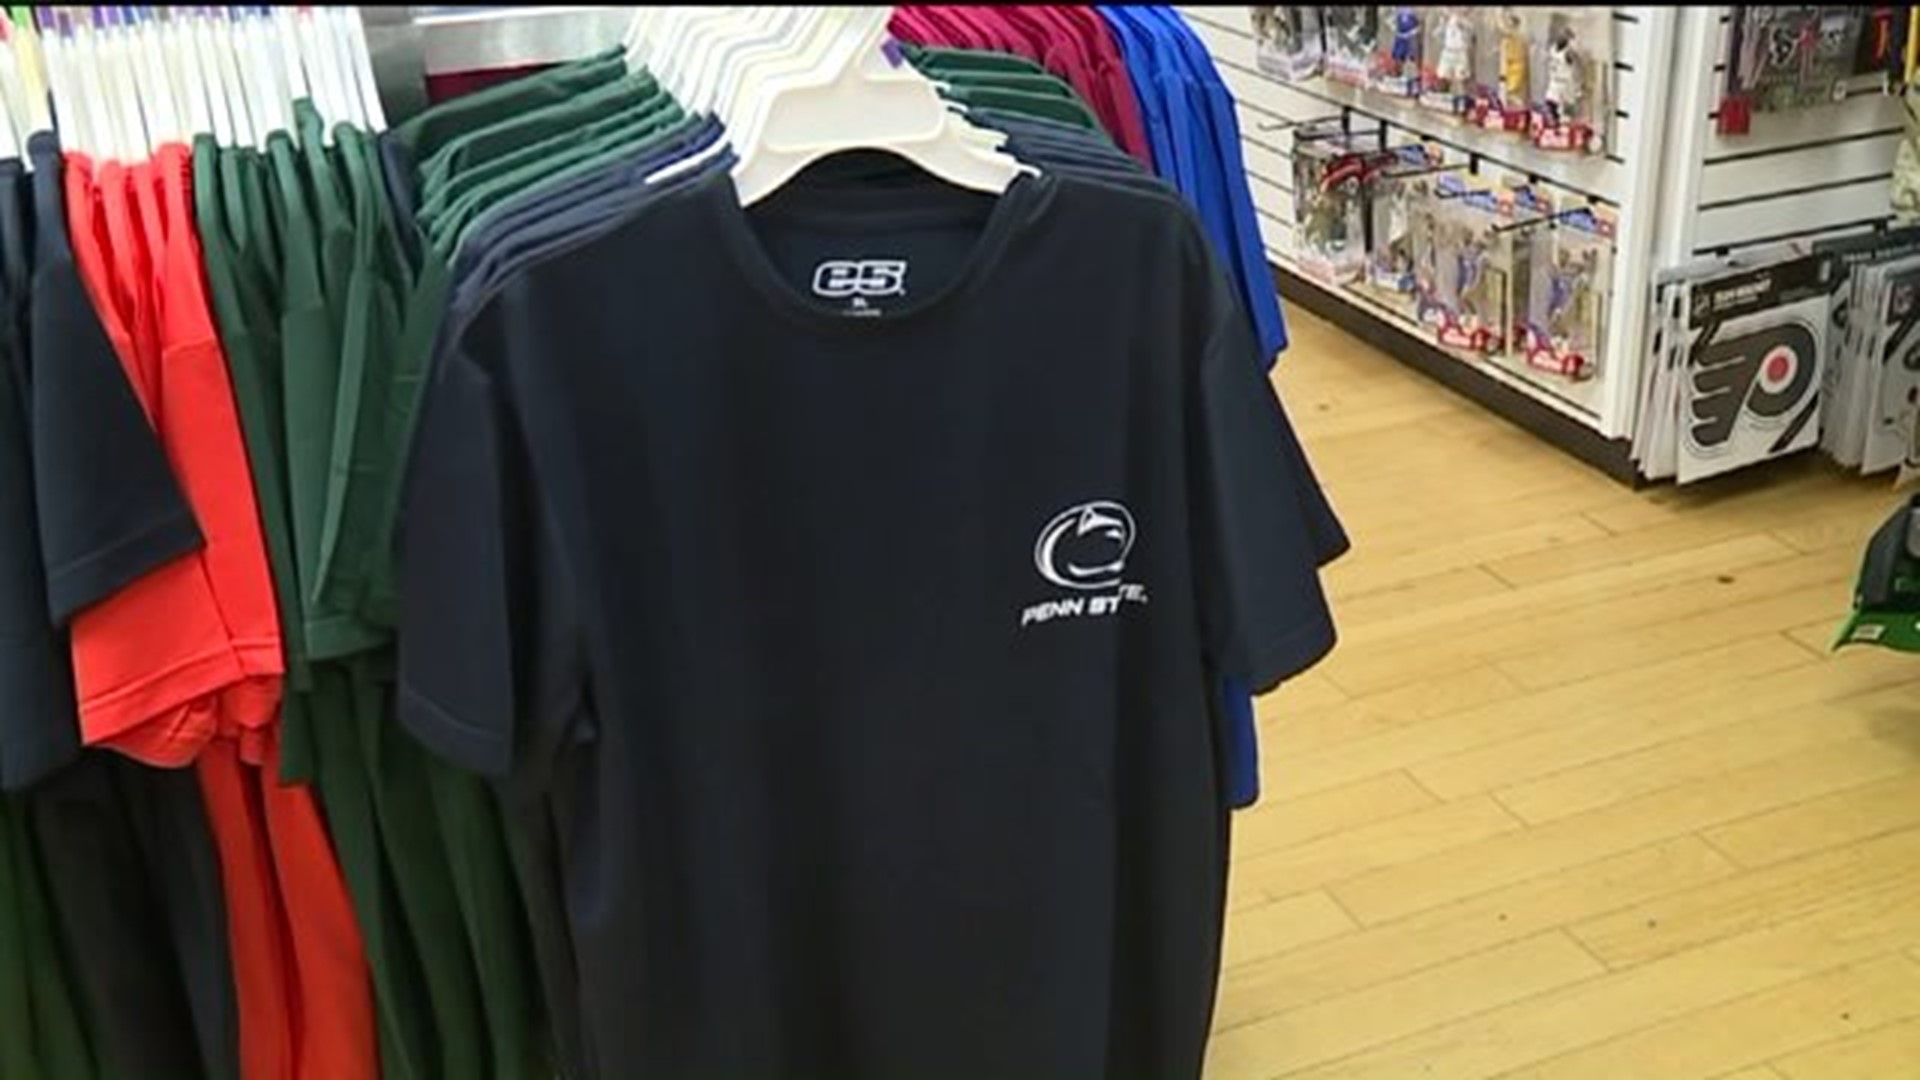 Penn State Gear Flys off Shelves